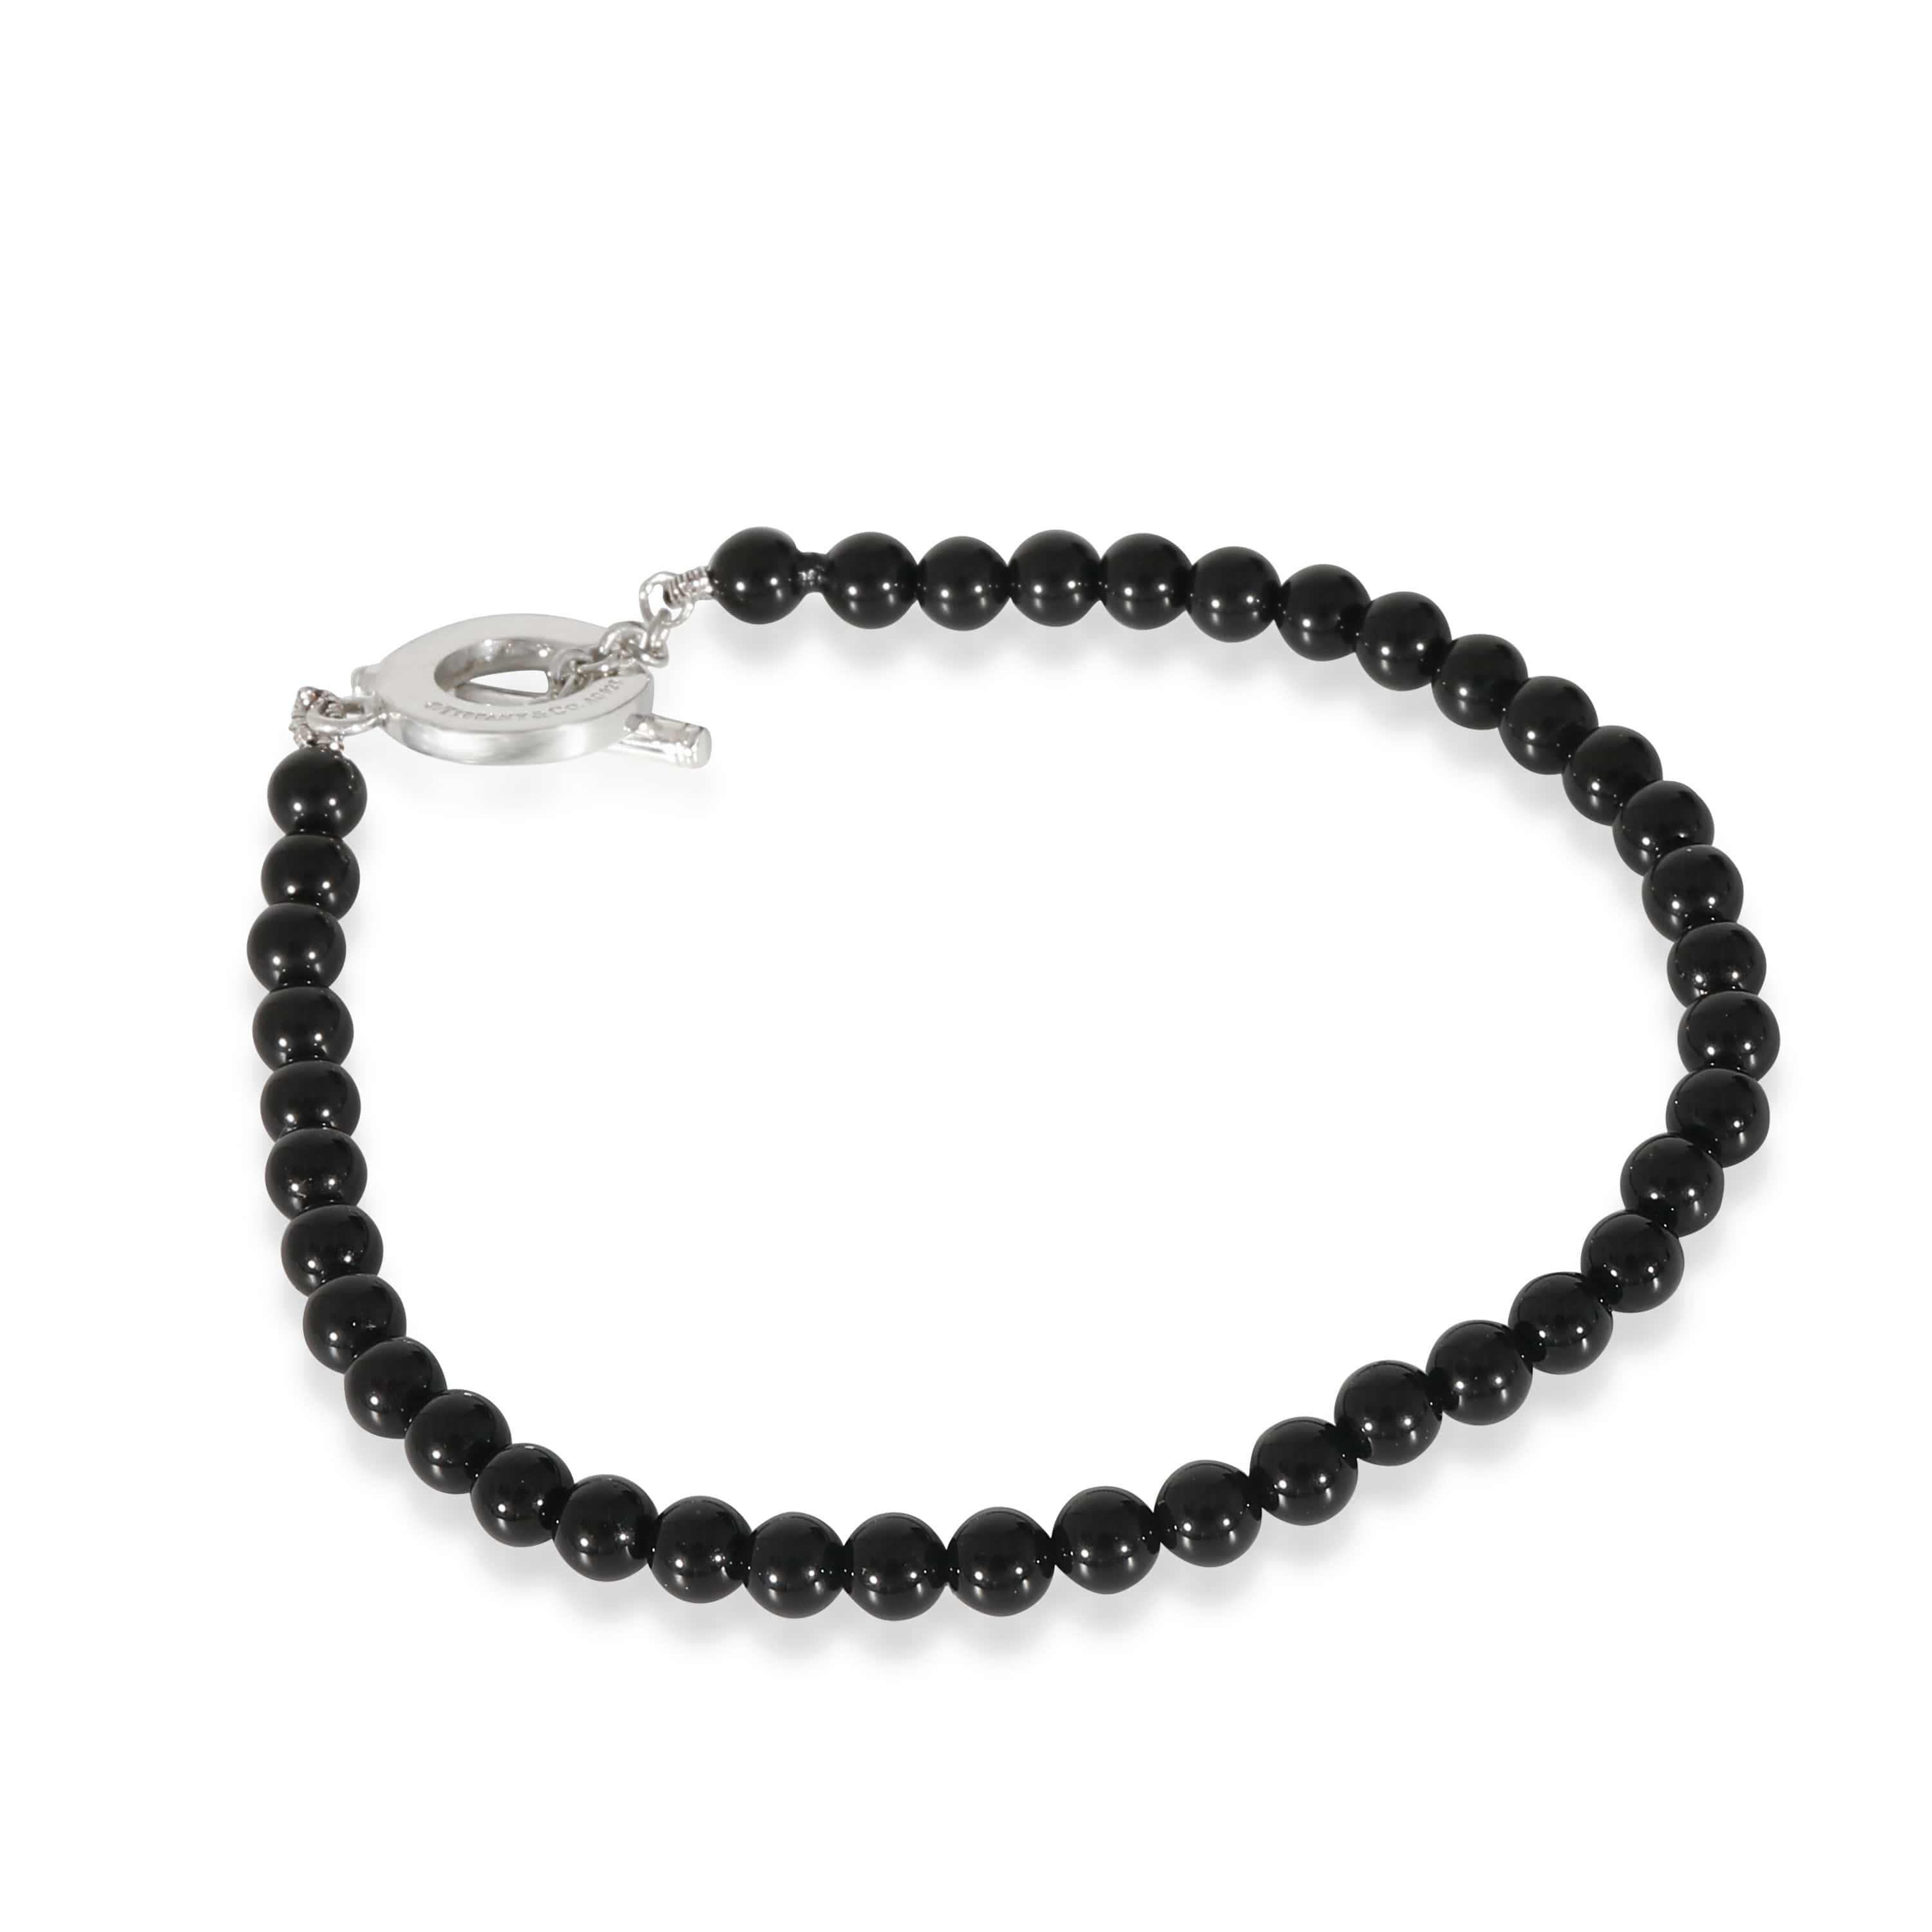 Tiffany & Co. Tiffany Onyx Beads Bracelet in Sterling Silver